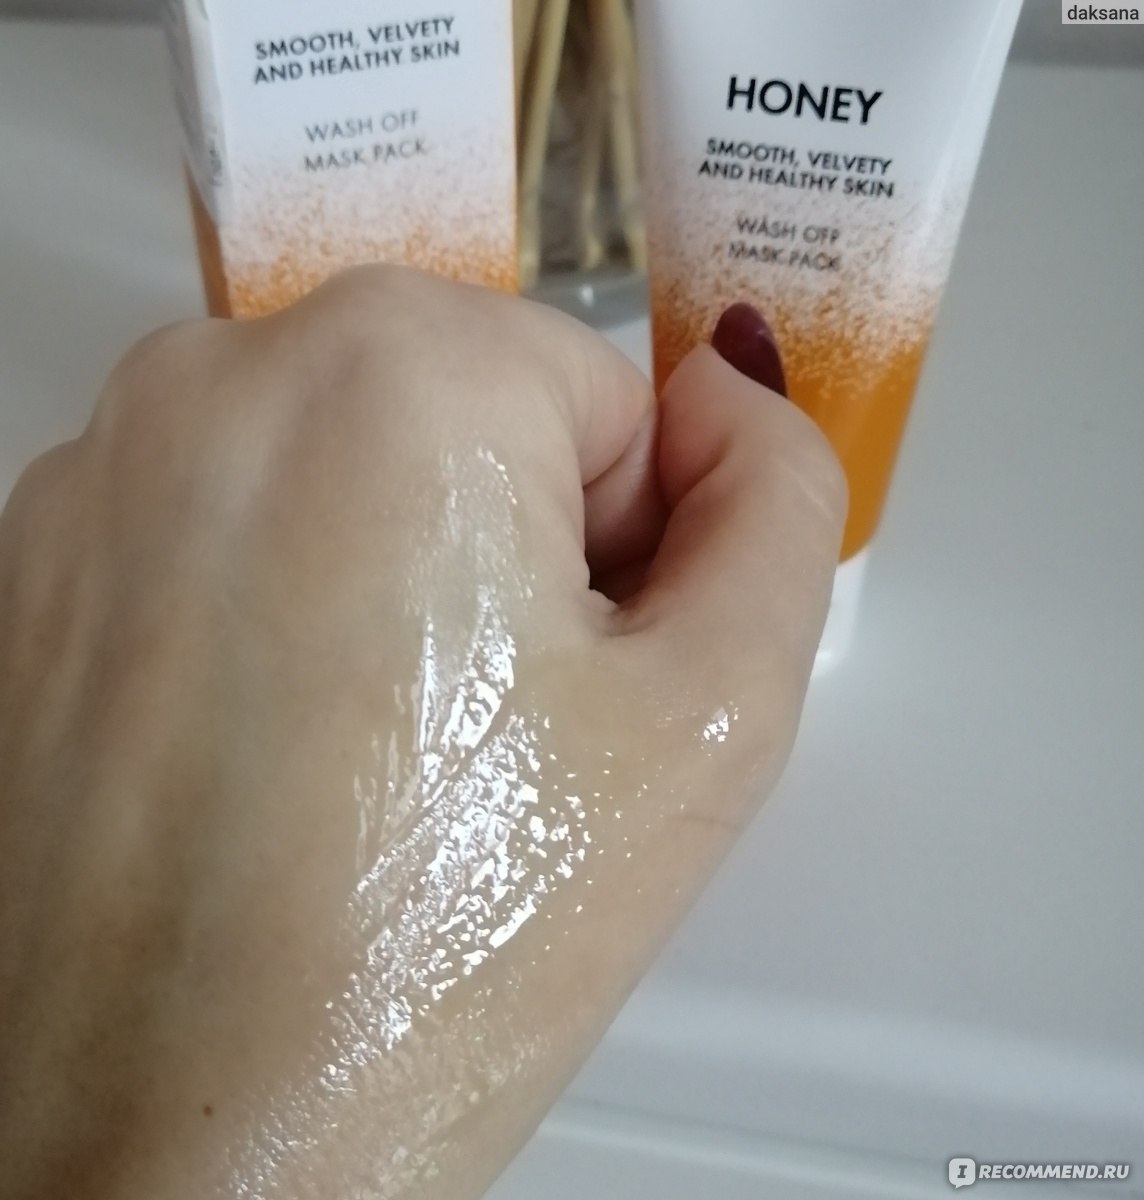 Маска для лица J:ON Противовоспалительная с медом Honey Wash Off  фото